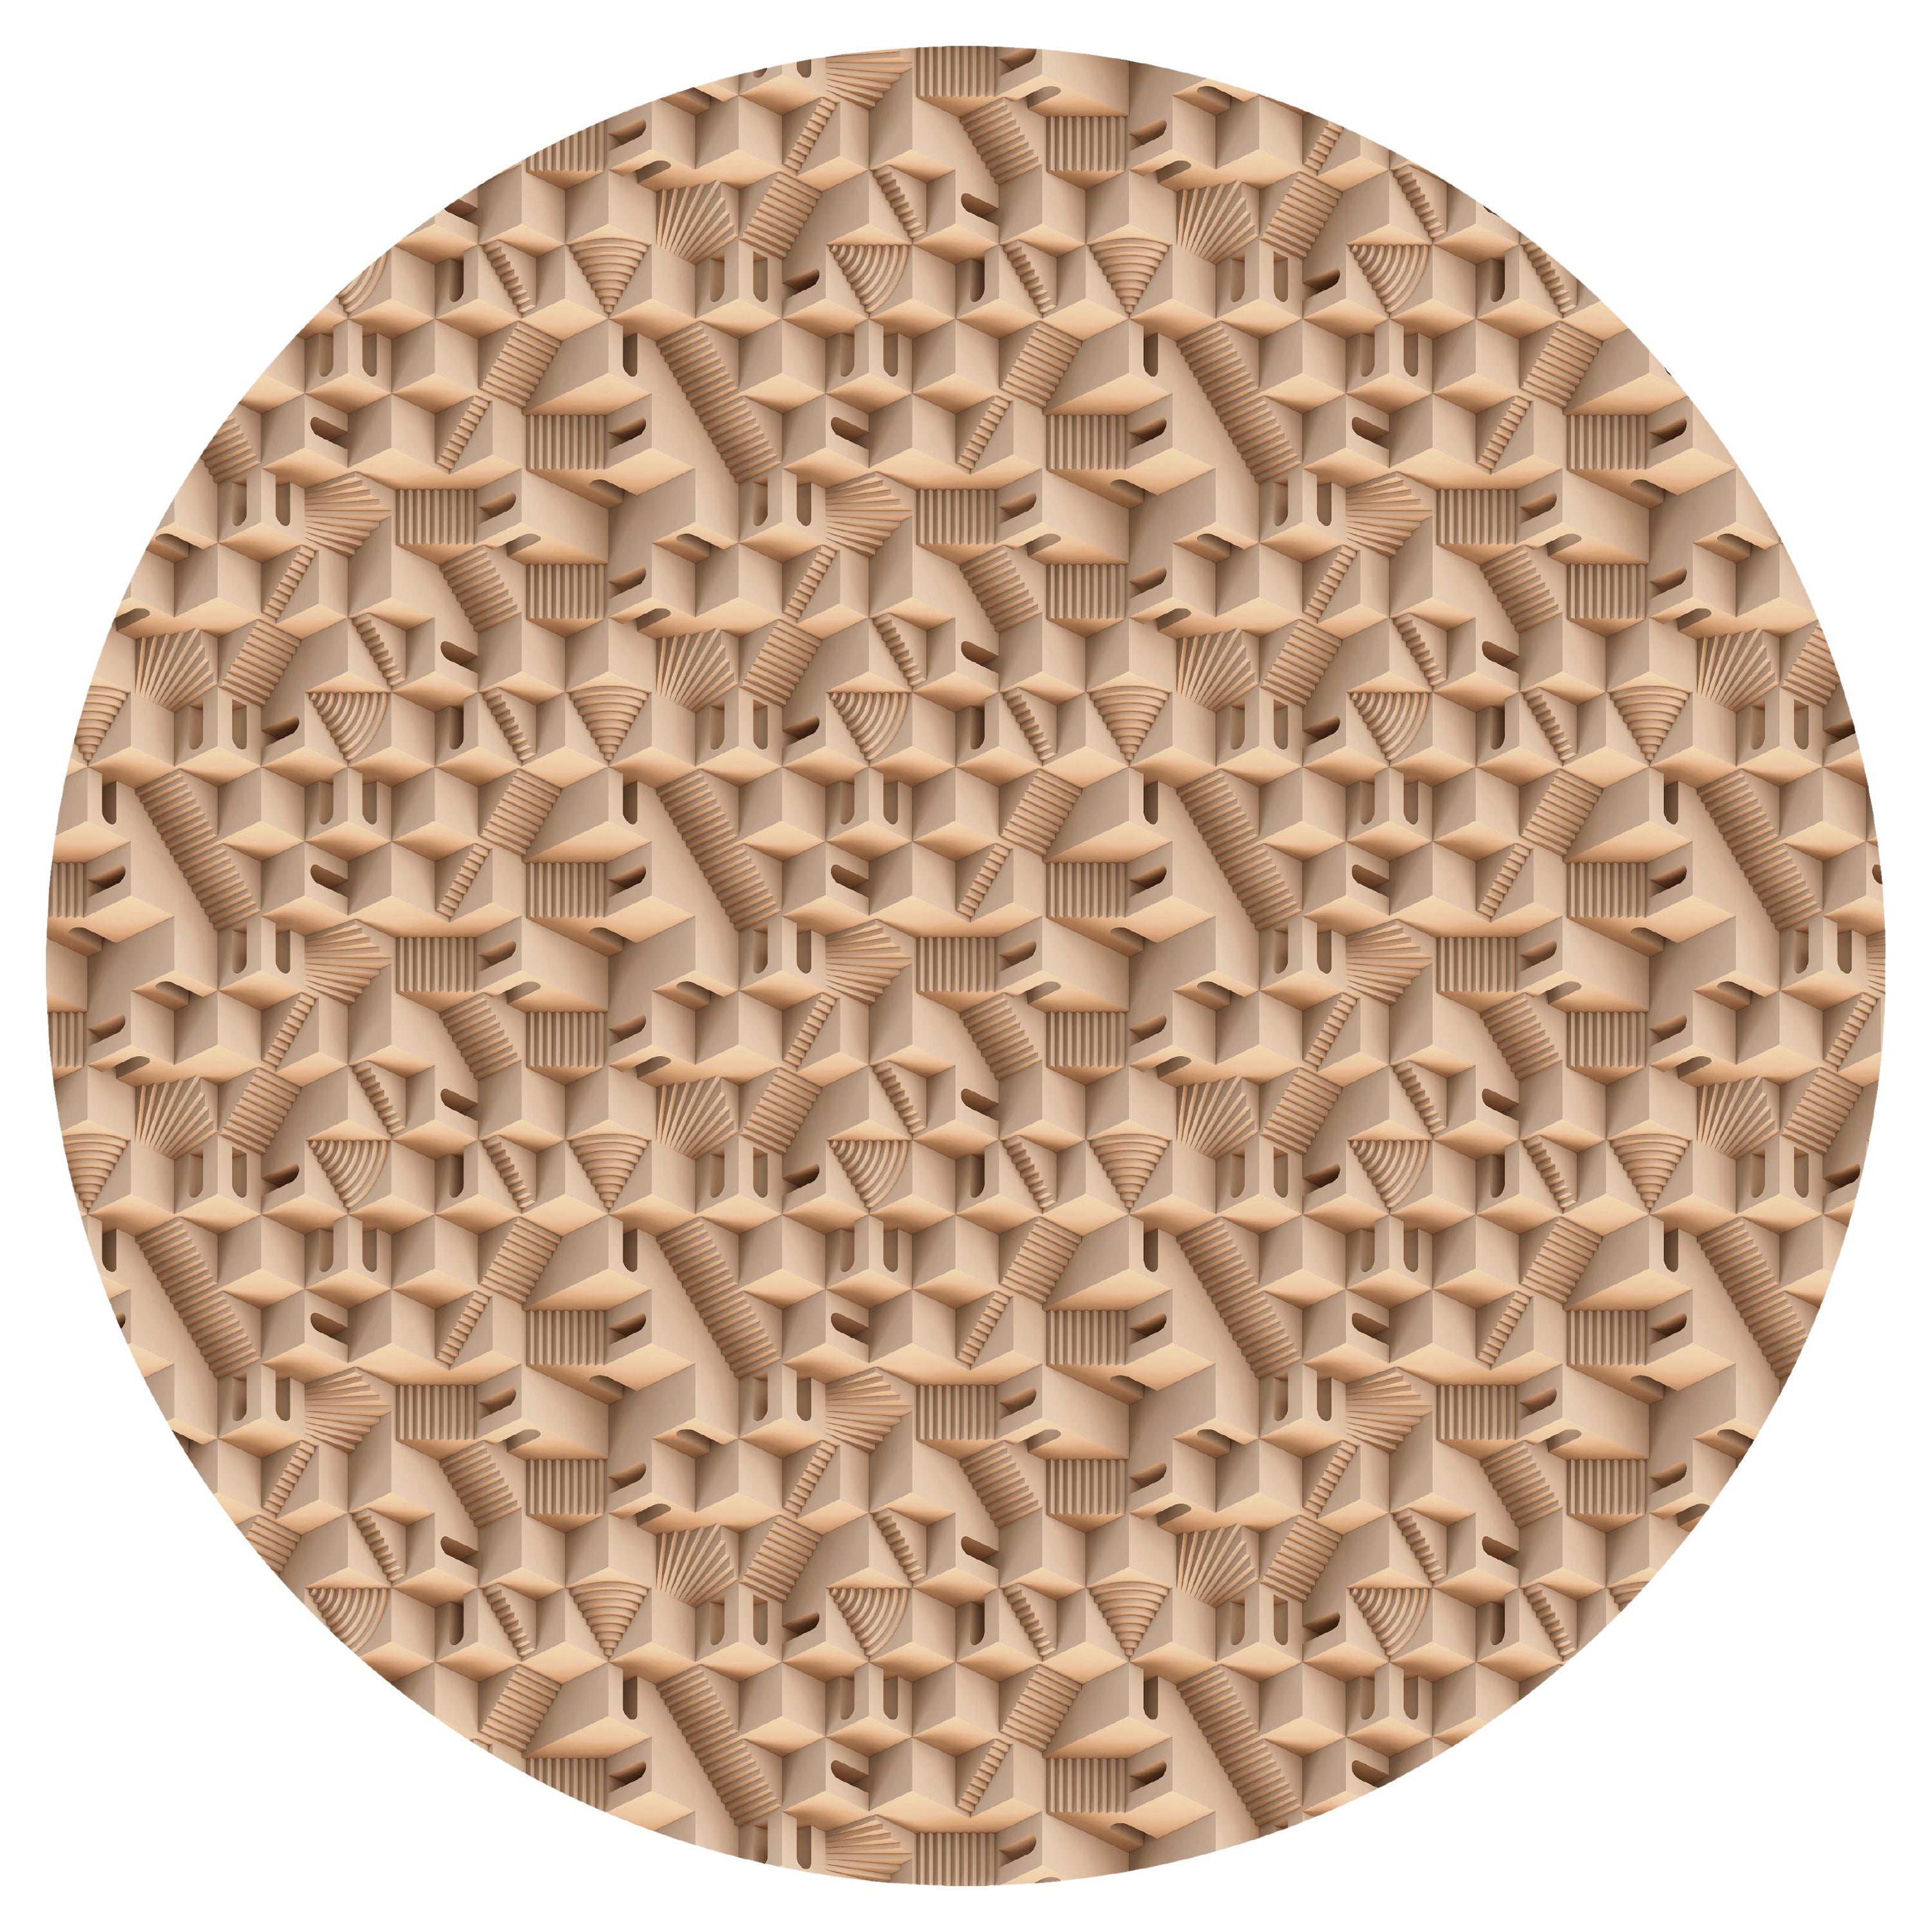 Großer runder Maze Puglia-Teppich aus Wolle mit Blindsaum von Moooi, von Note